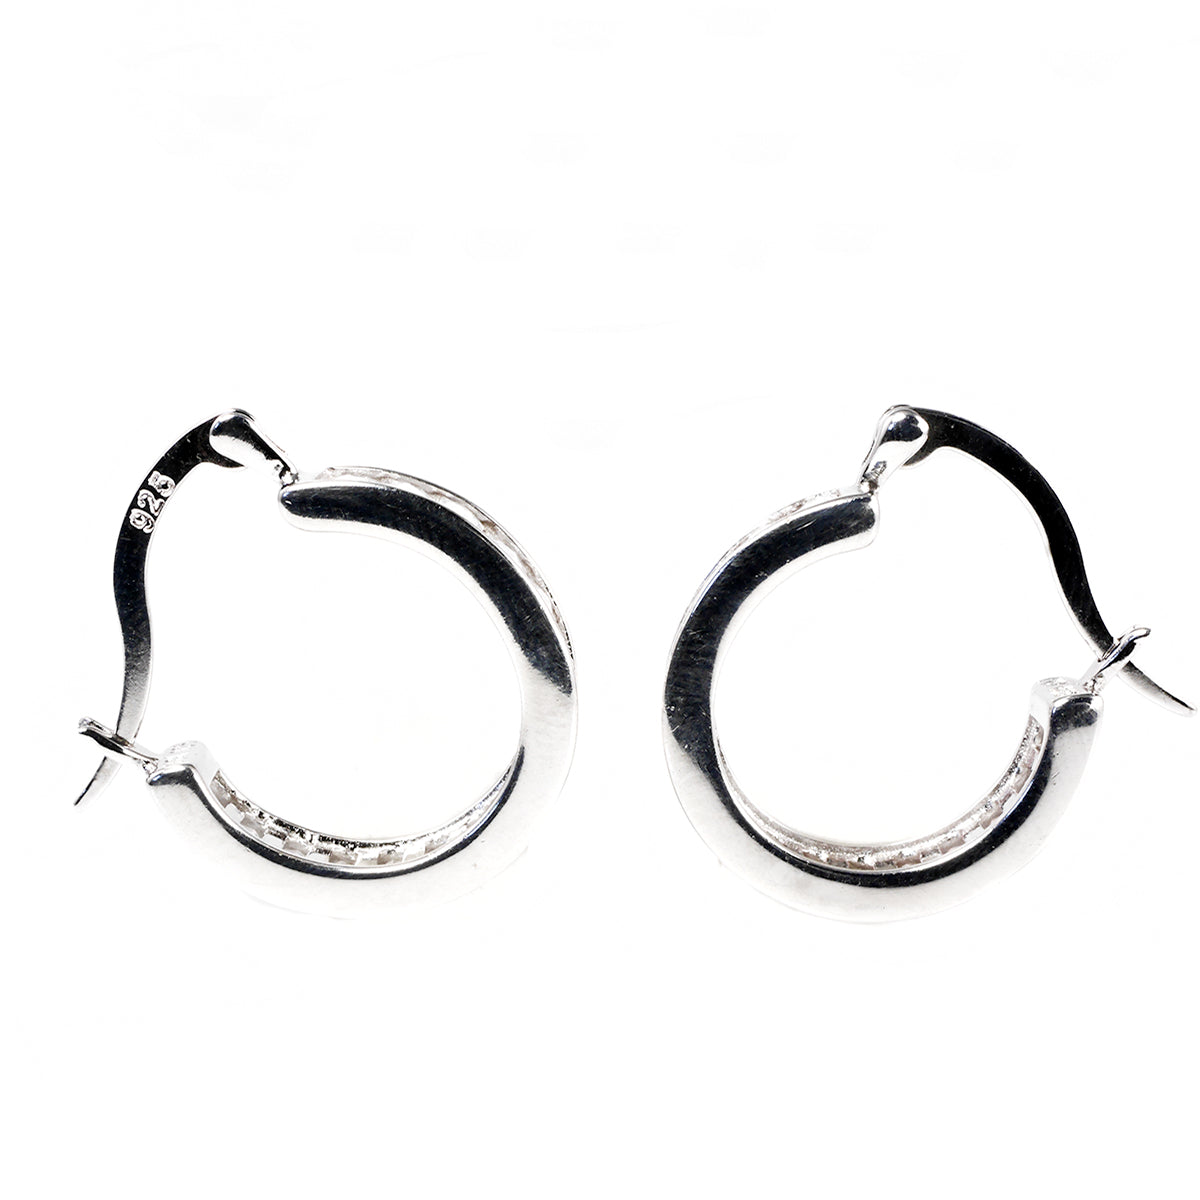 Silver &amp; Cubic Zirconia Hoop Earrings